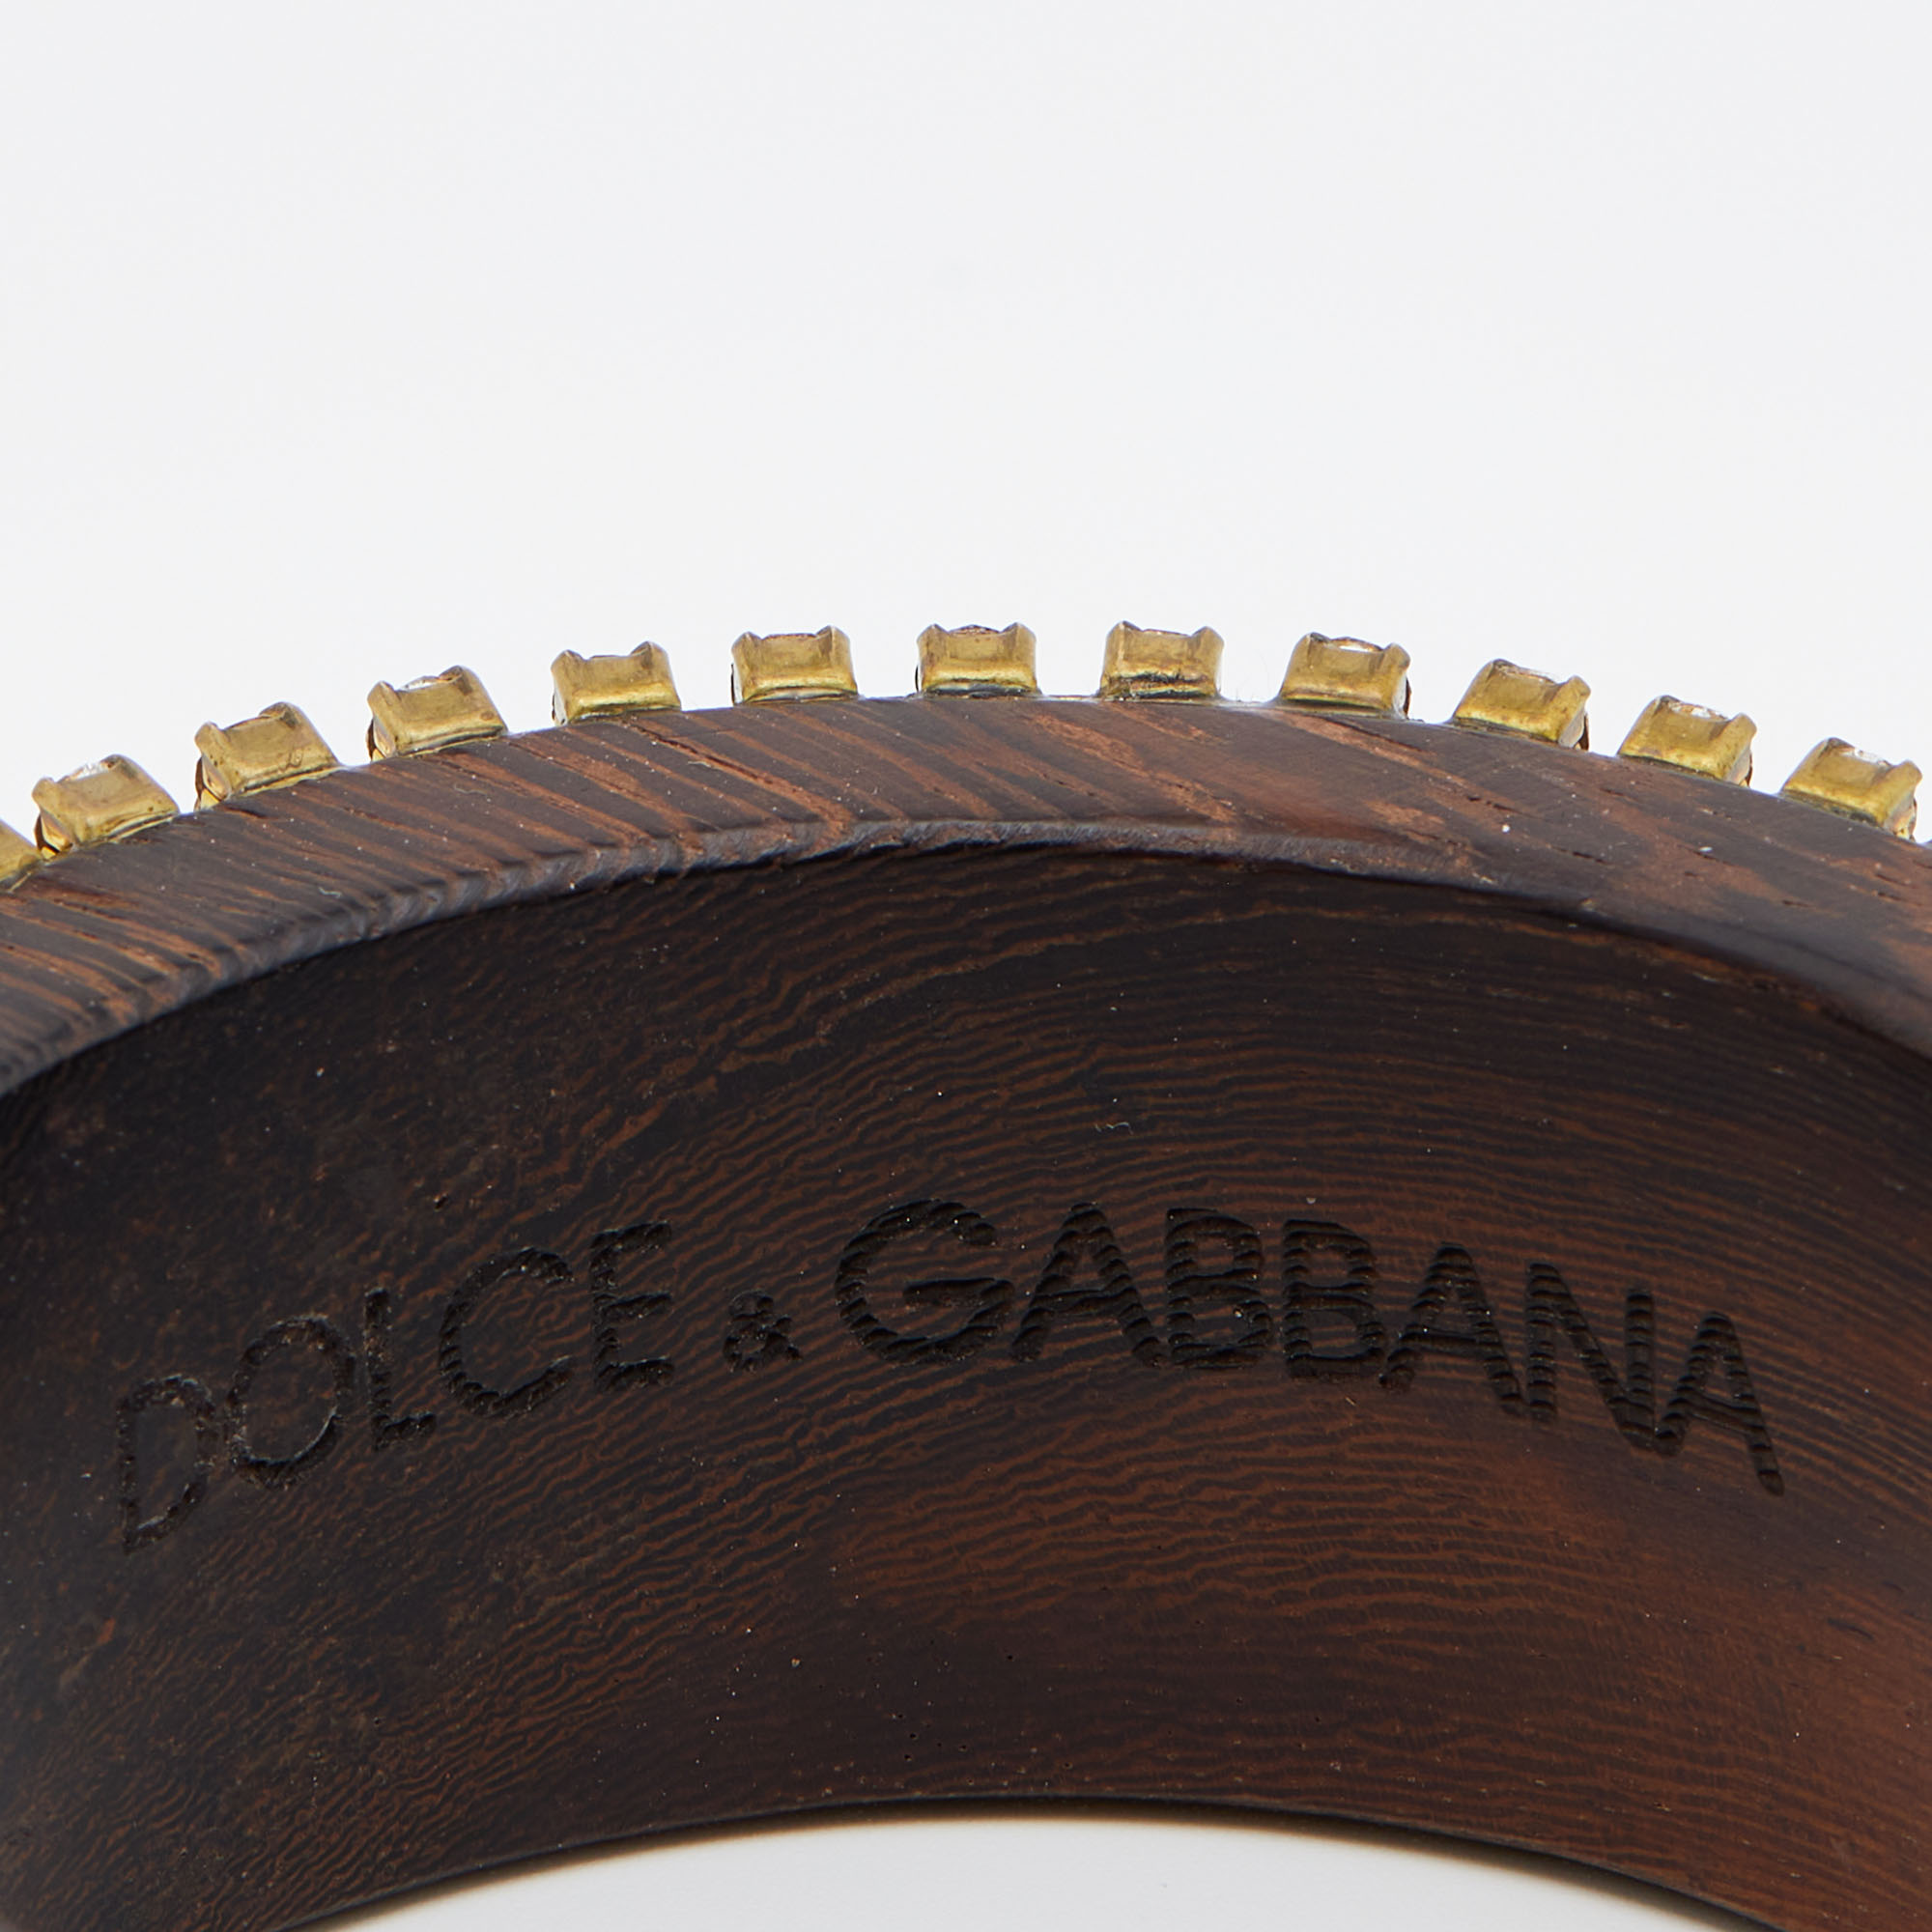 Dolce & Gabbana Brown Wood Crystal Embellished Wide Bangle